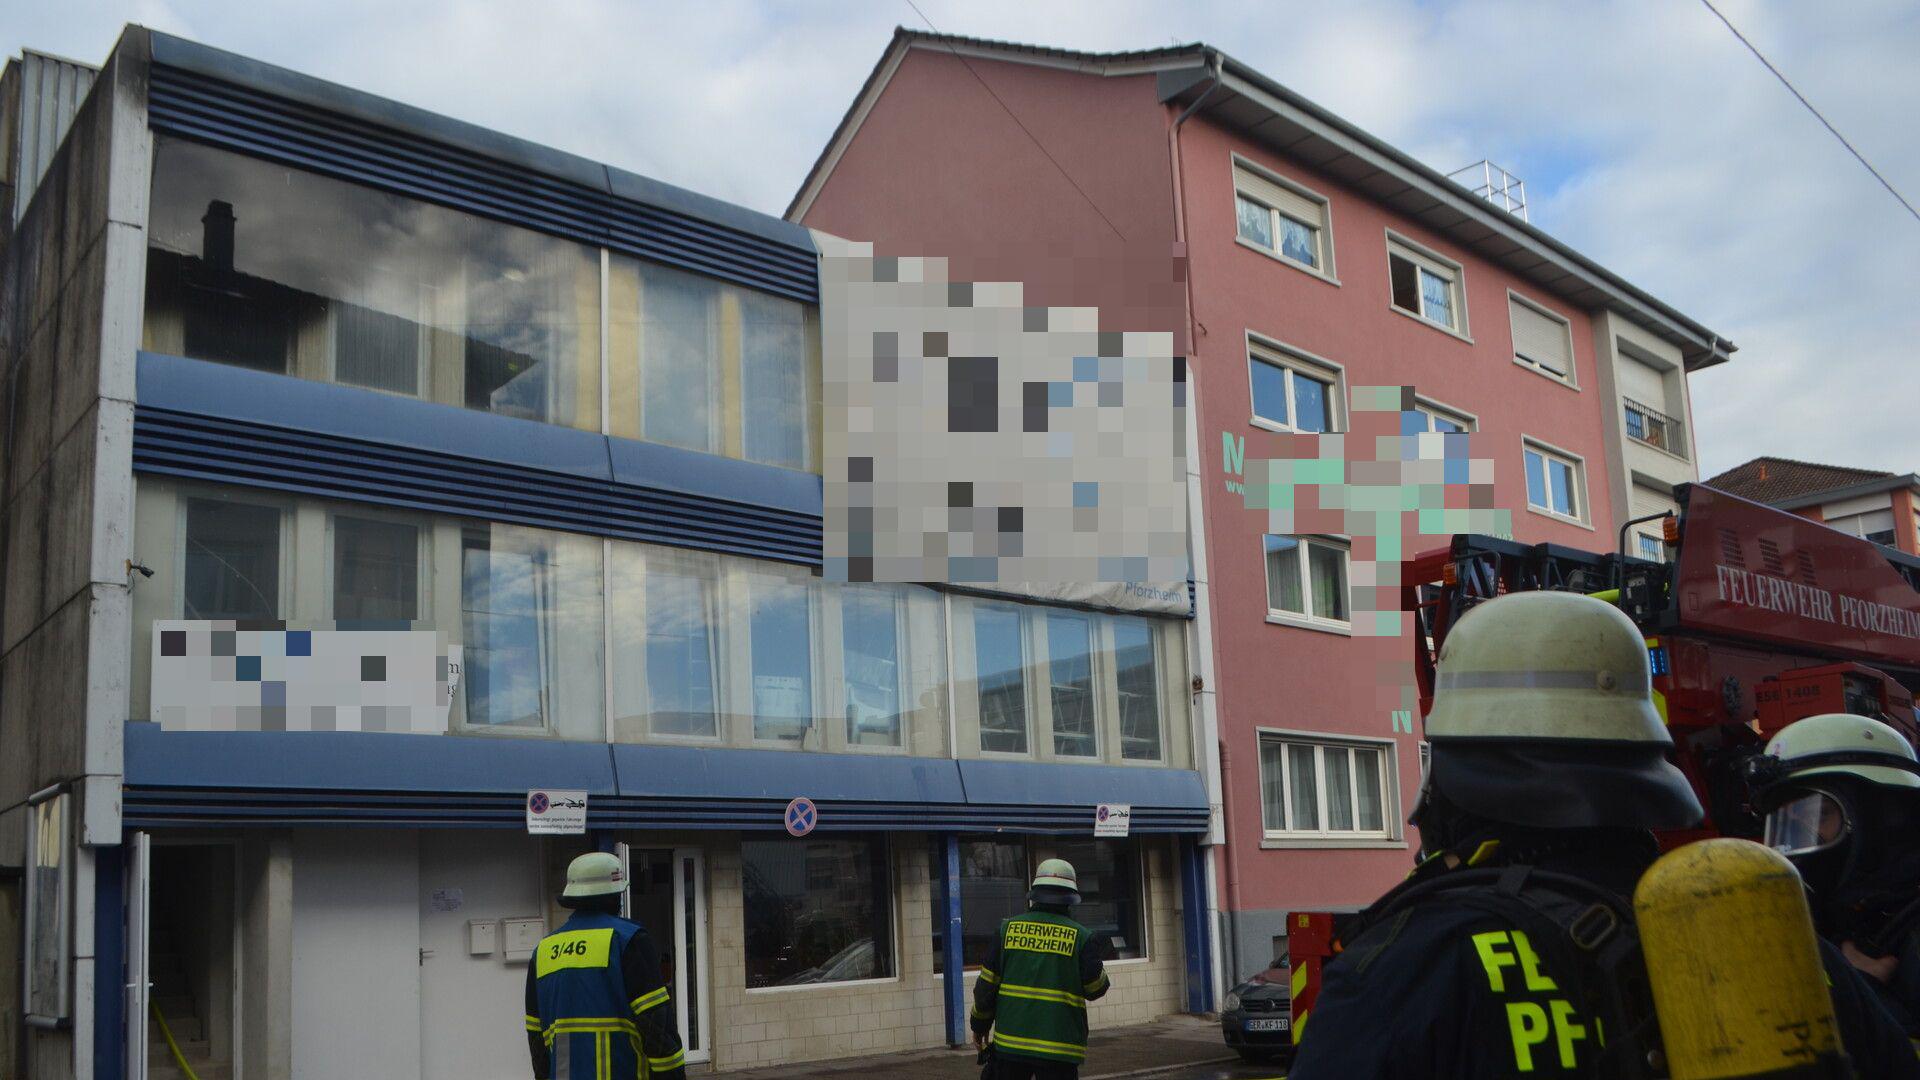 Front eines Mehrfamilienhauses in Pforzheim. Aus der oberen linken Wohnung mit Balkon dringt Rauch. Vor dem Haus sind drei Feuerwehrleute zu sehen.